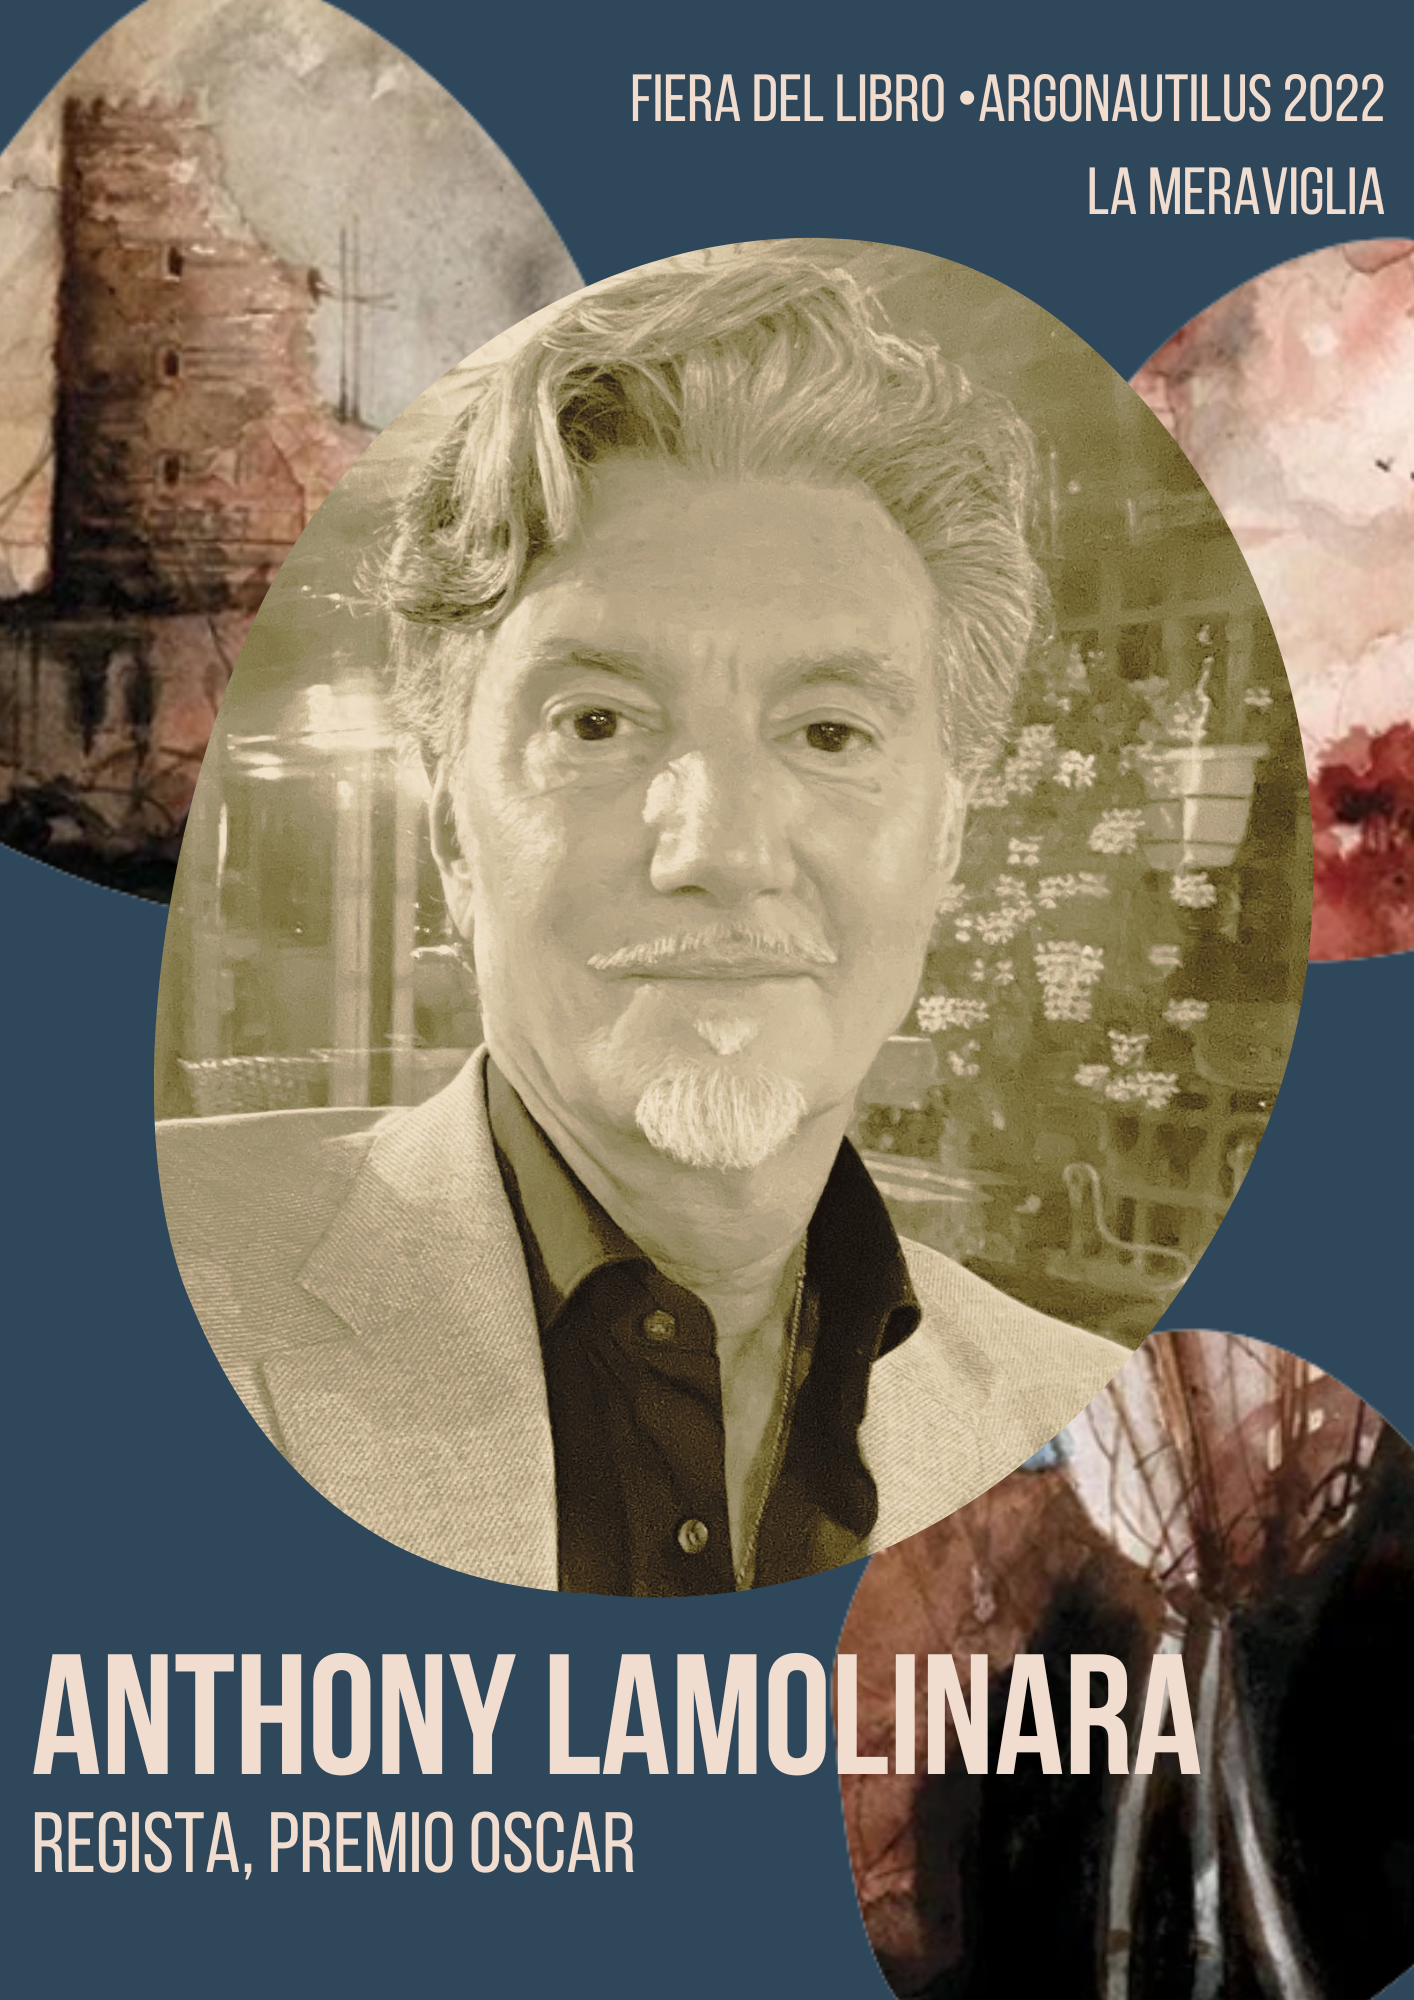 Anthony Lamolinara